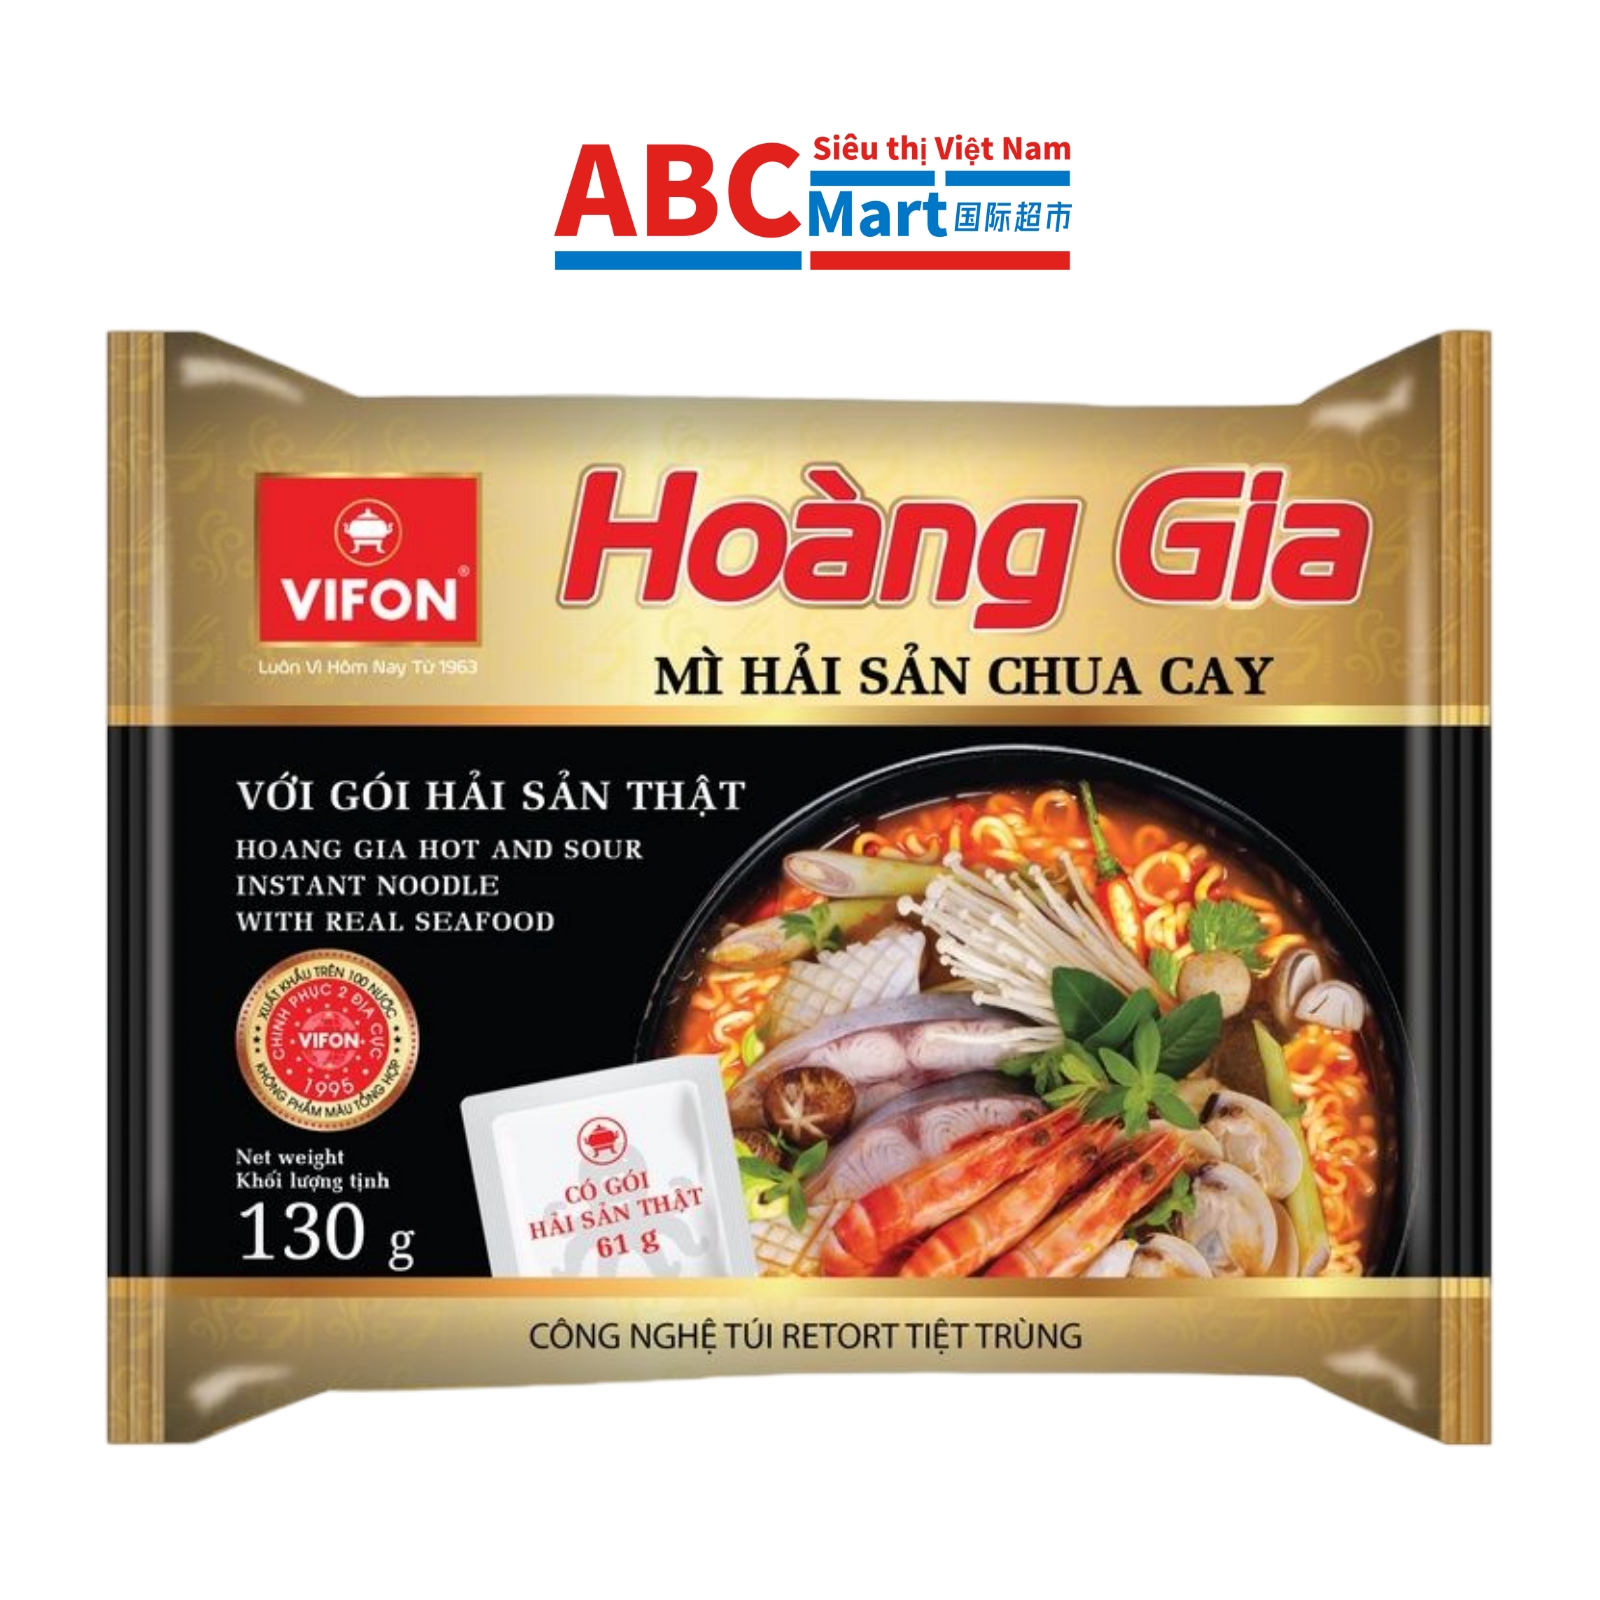 【Việt Nam- Mì Hải Sản Chua Cay HOÀNG GIA VIFON 130g 】 Việt Nam海鲜大虾方便面泡面-ABCMart 国际超市